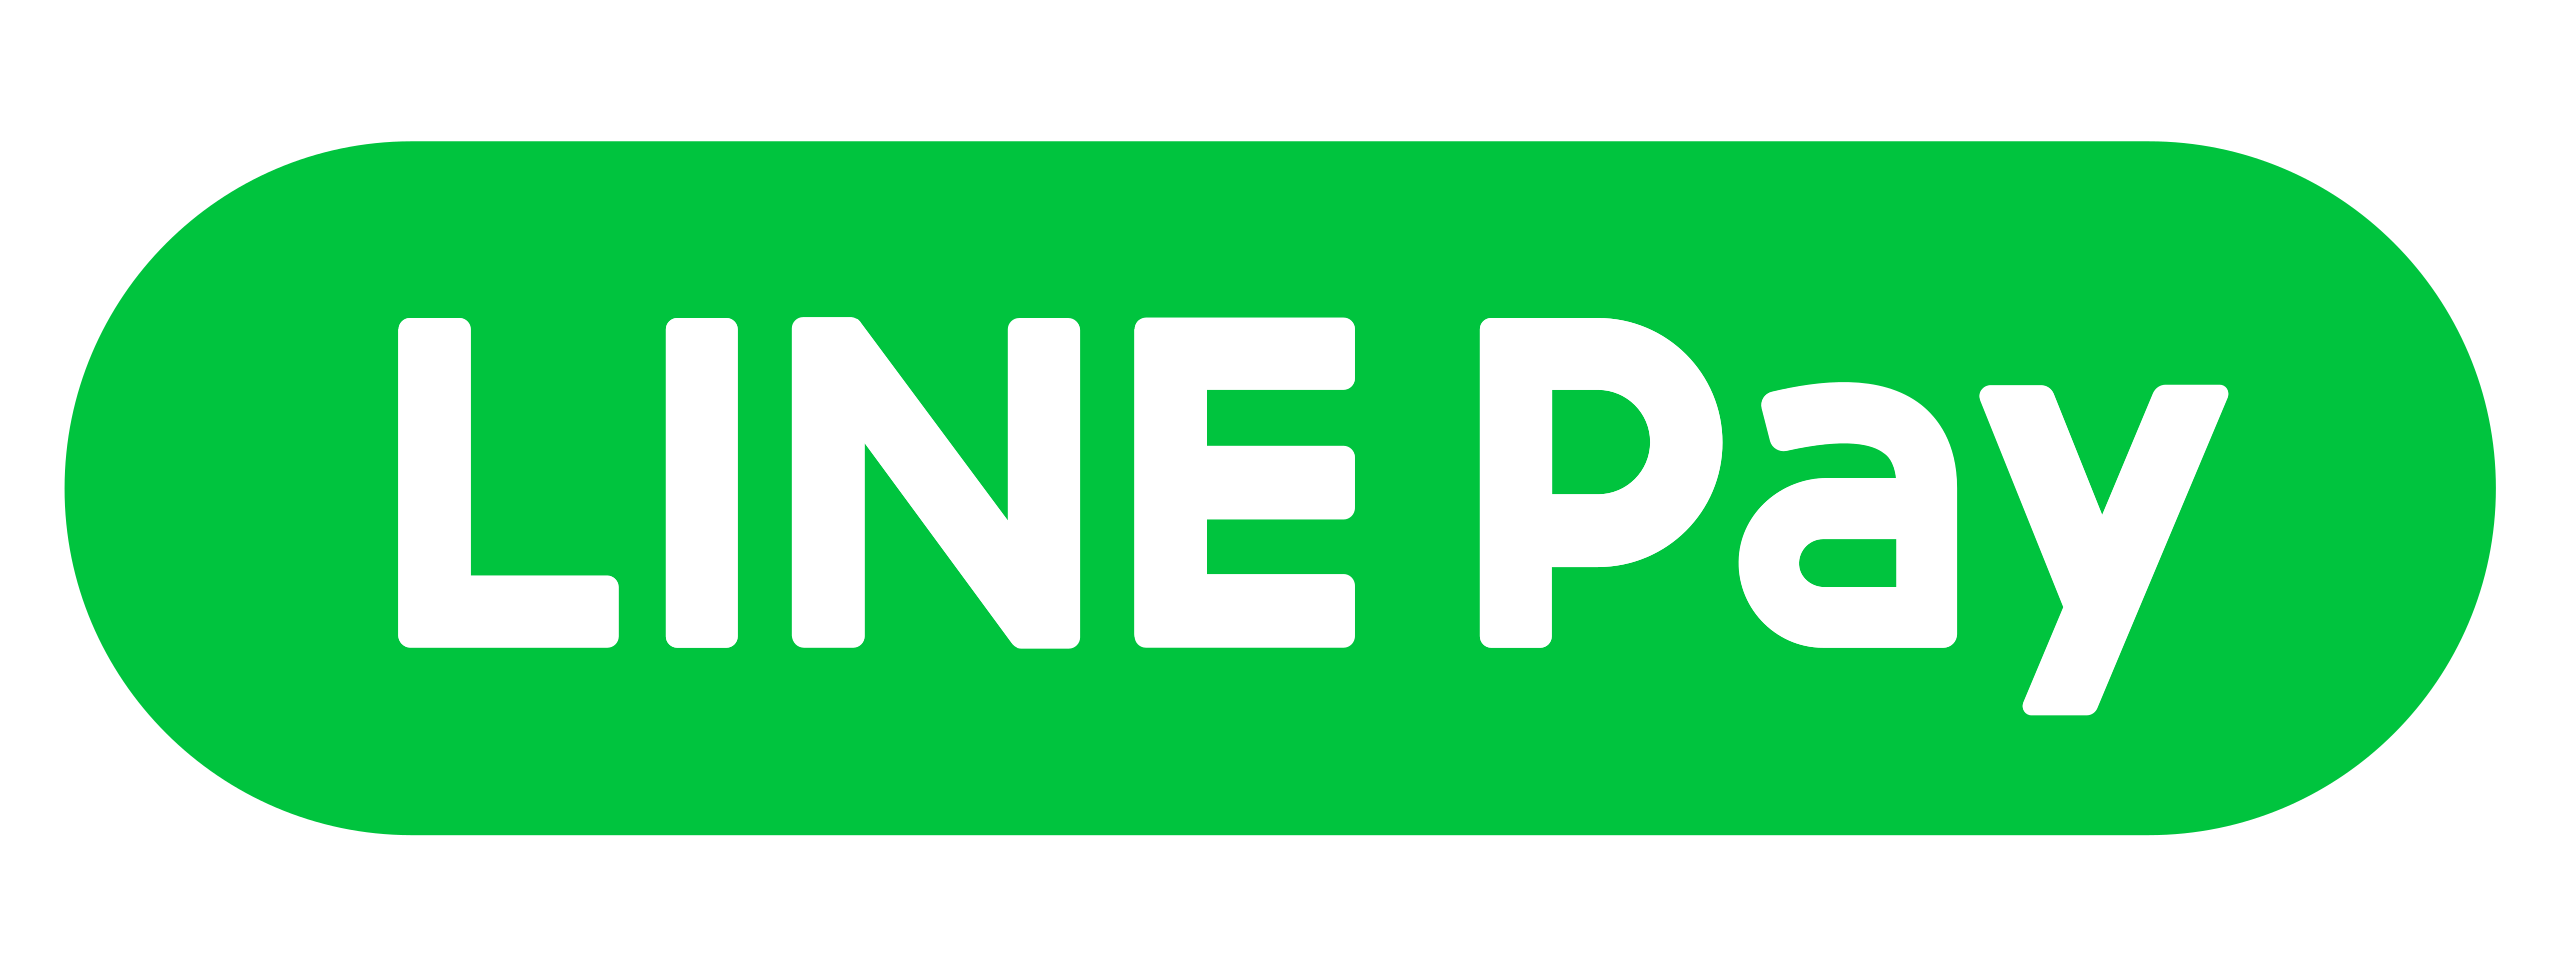 Line pay logo